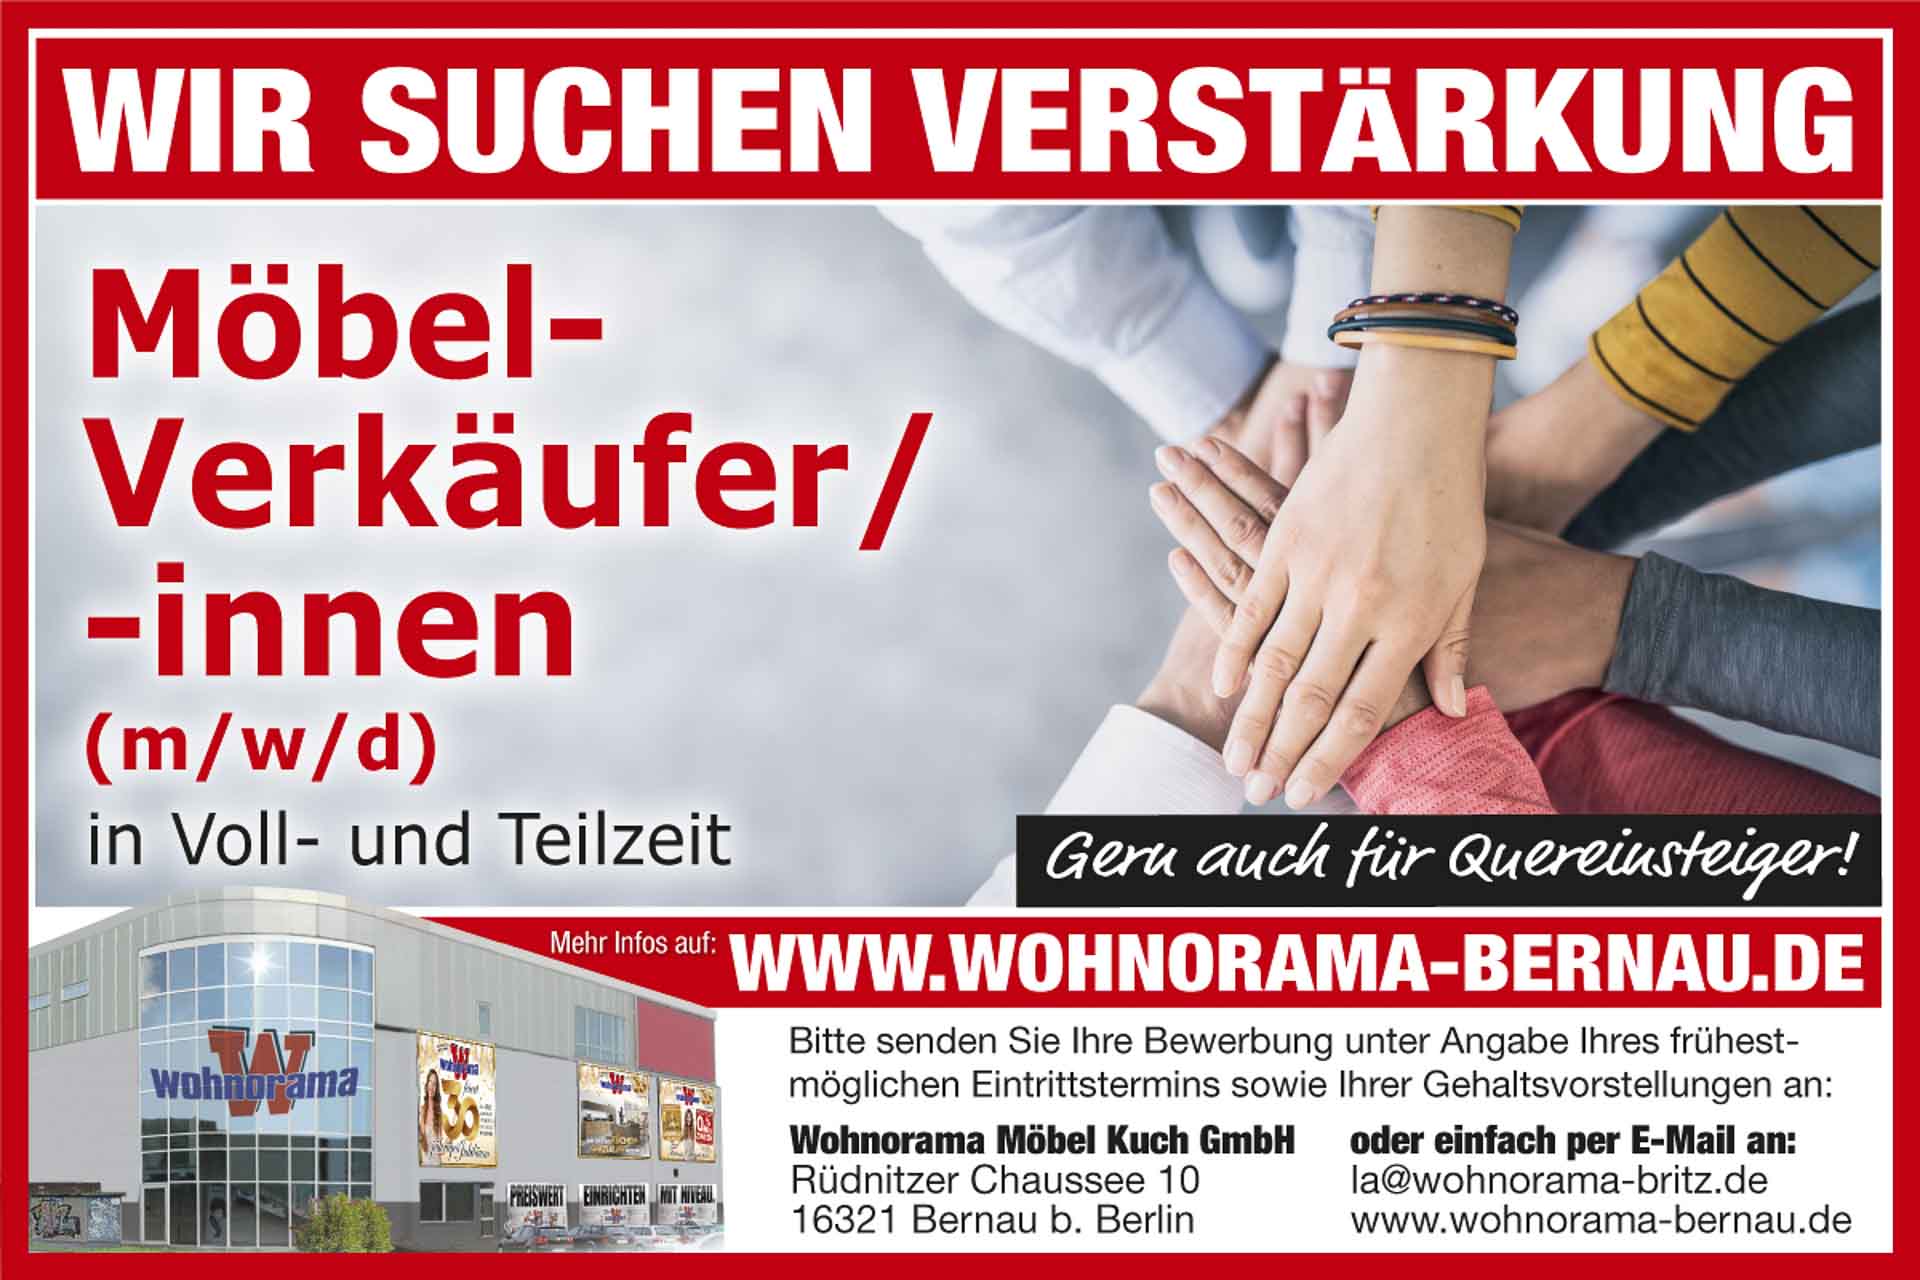 Wohnorama Bernau: Möbel-Verkäufer/ -innen (m/w/d) in Voll- und Teilzeit